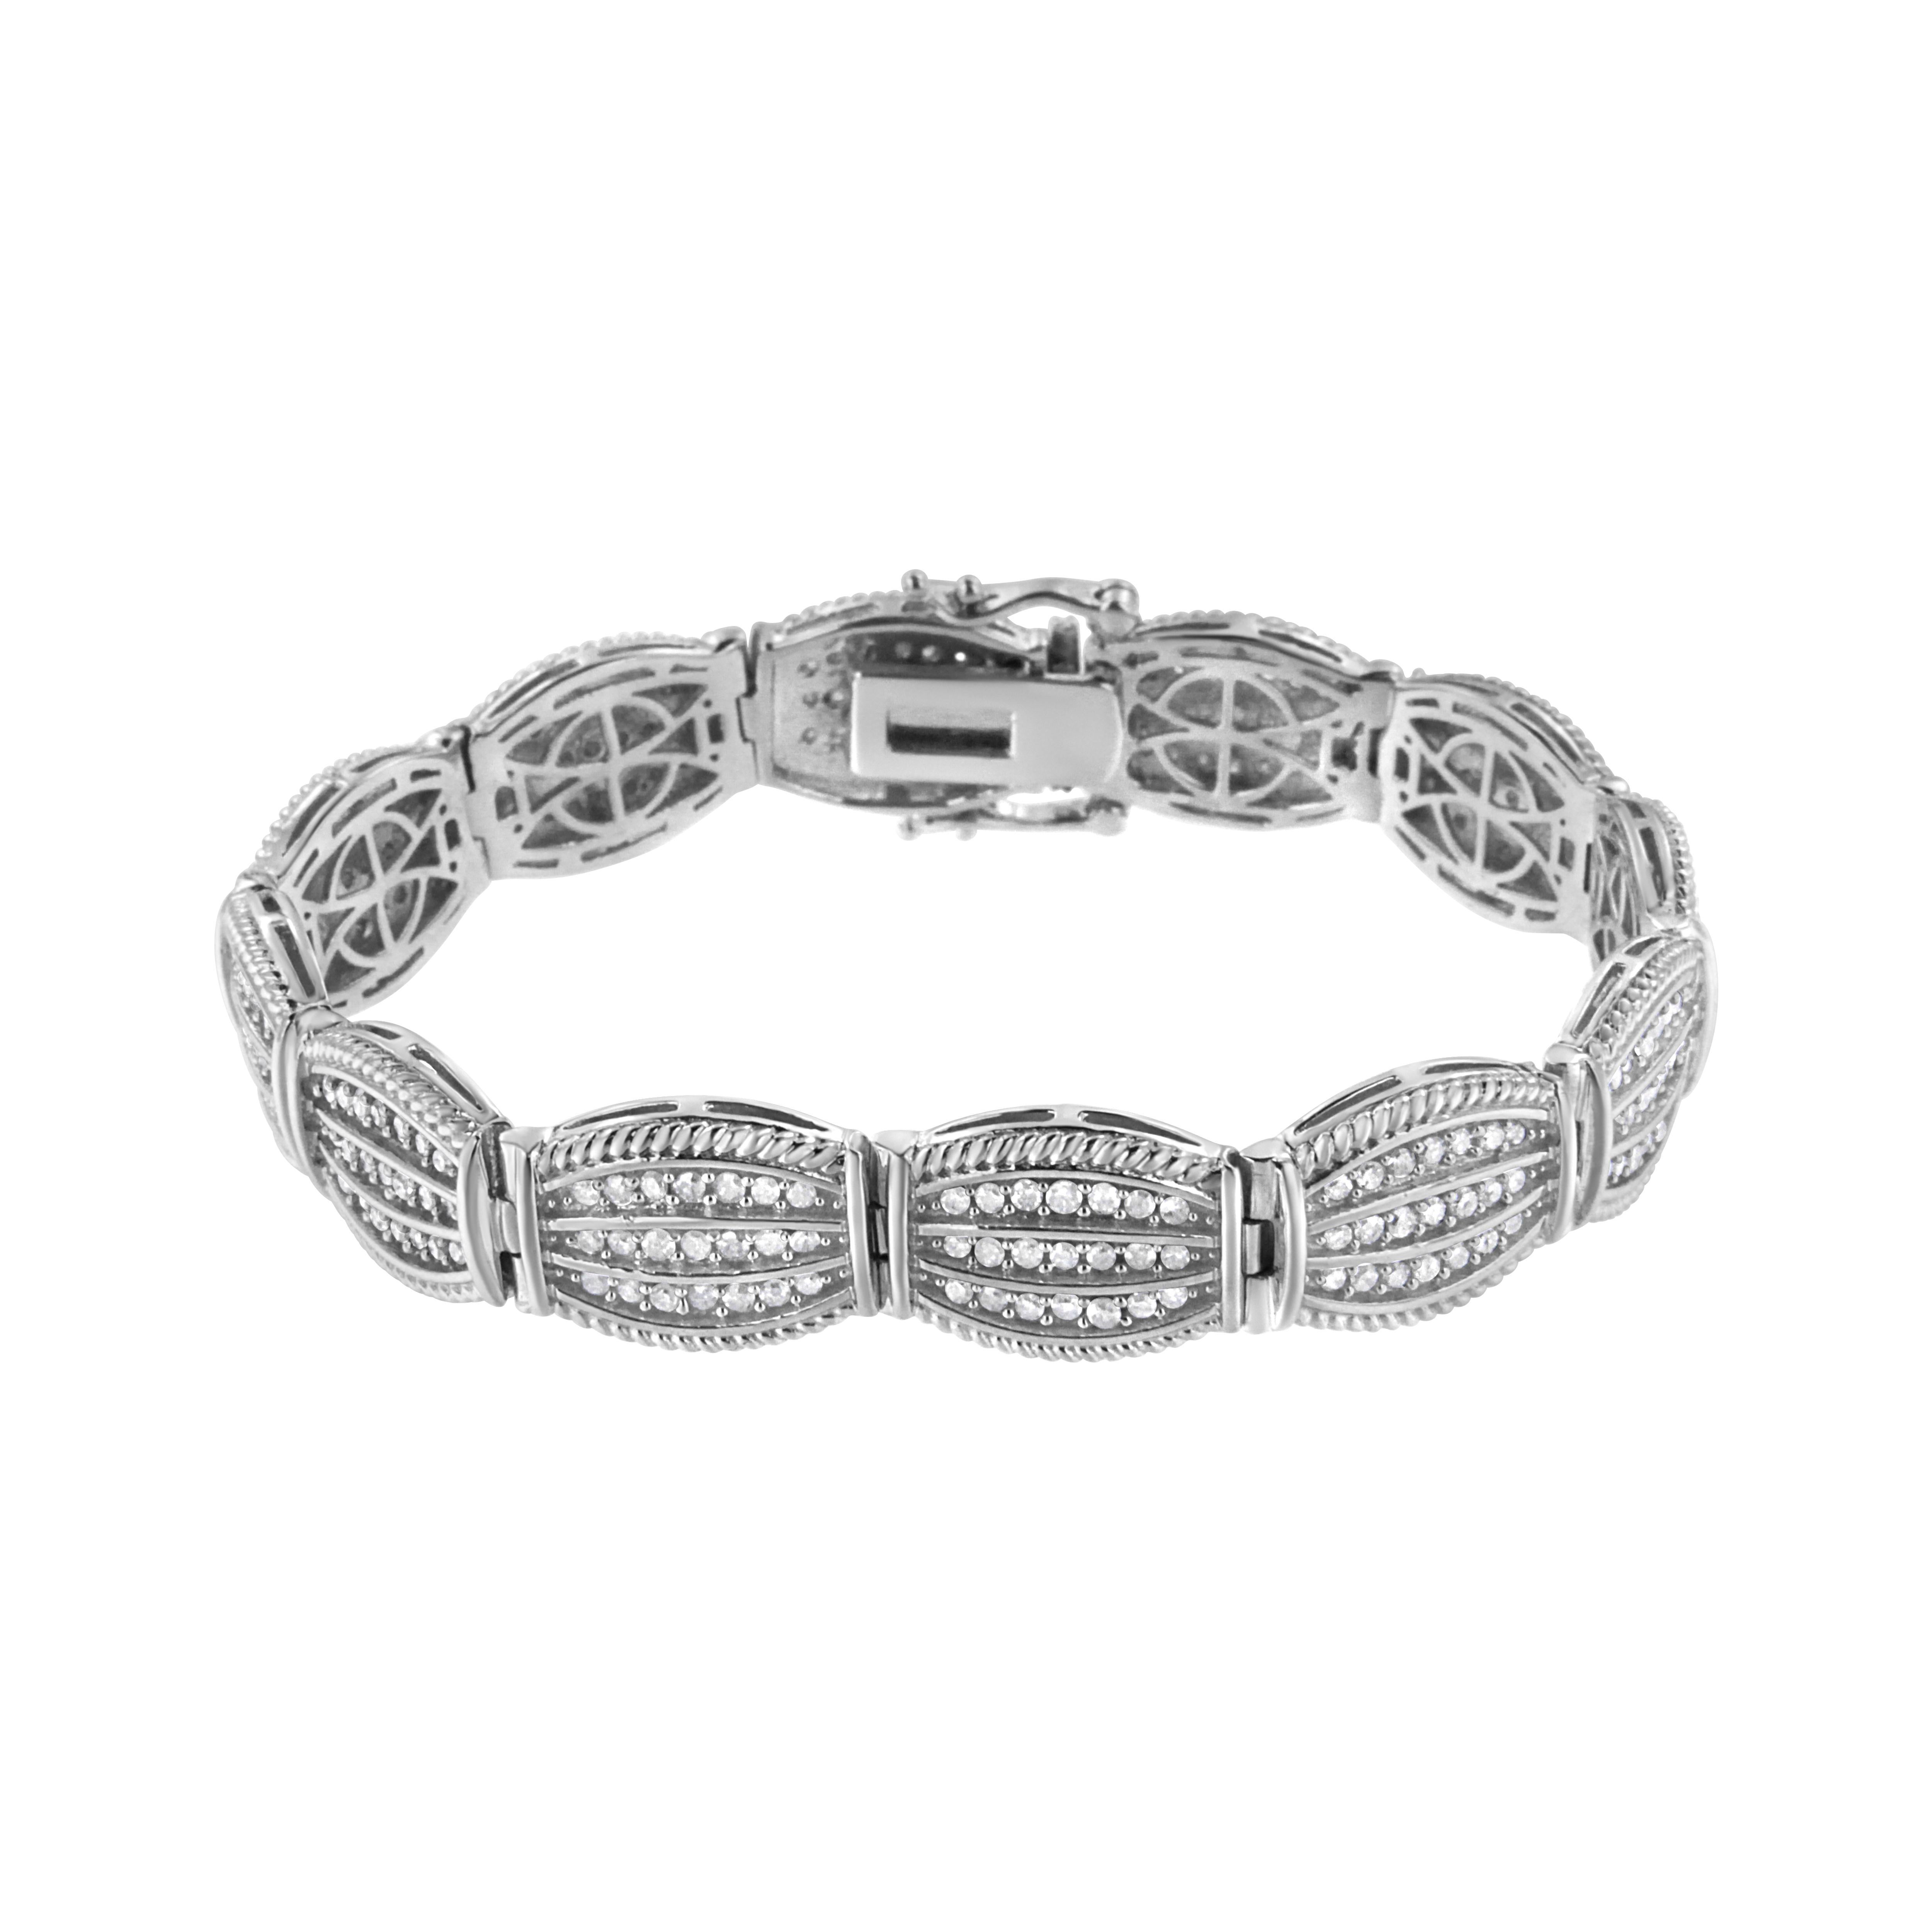 Dieses Armband ist ein atemberaubendes Stück. 3ct TDW von rund geschliffenen Diamanten schimmern in diesem Sterling Silber Art Deco Link Armband. Jedes Glied hat eine geometrische Form und ist mit drei Reihen von Diamanten besetzt. Ein silbernes